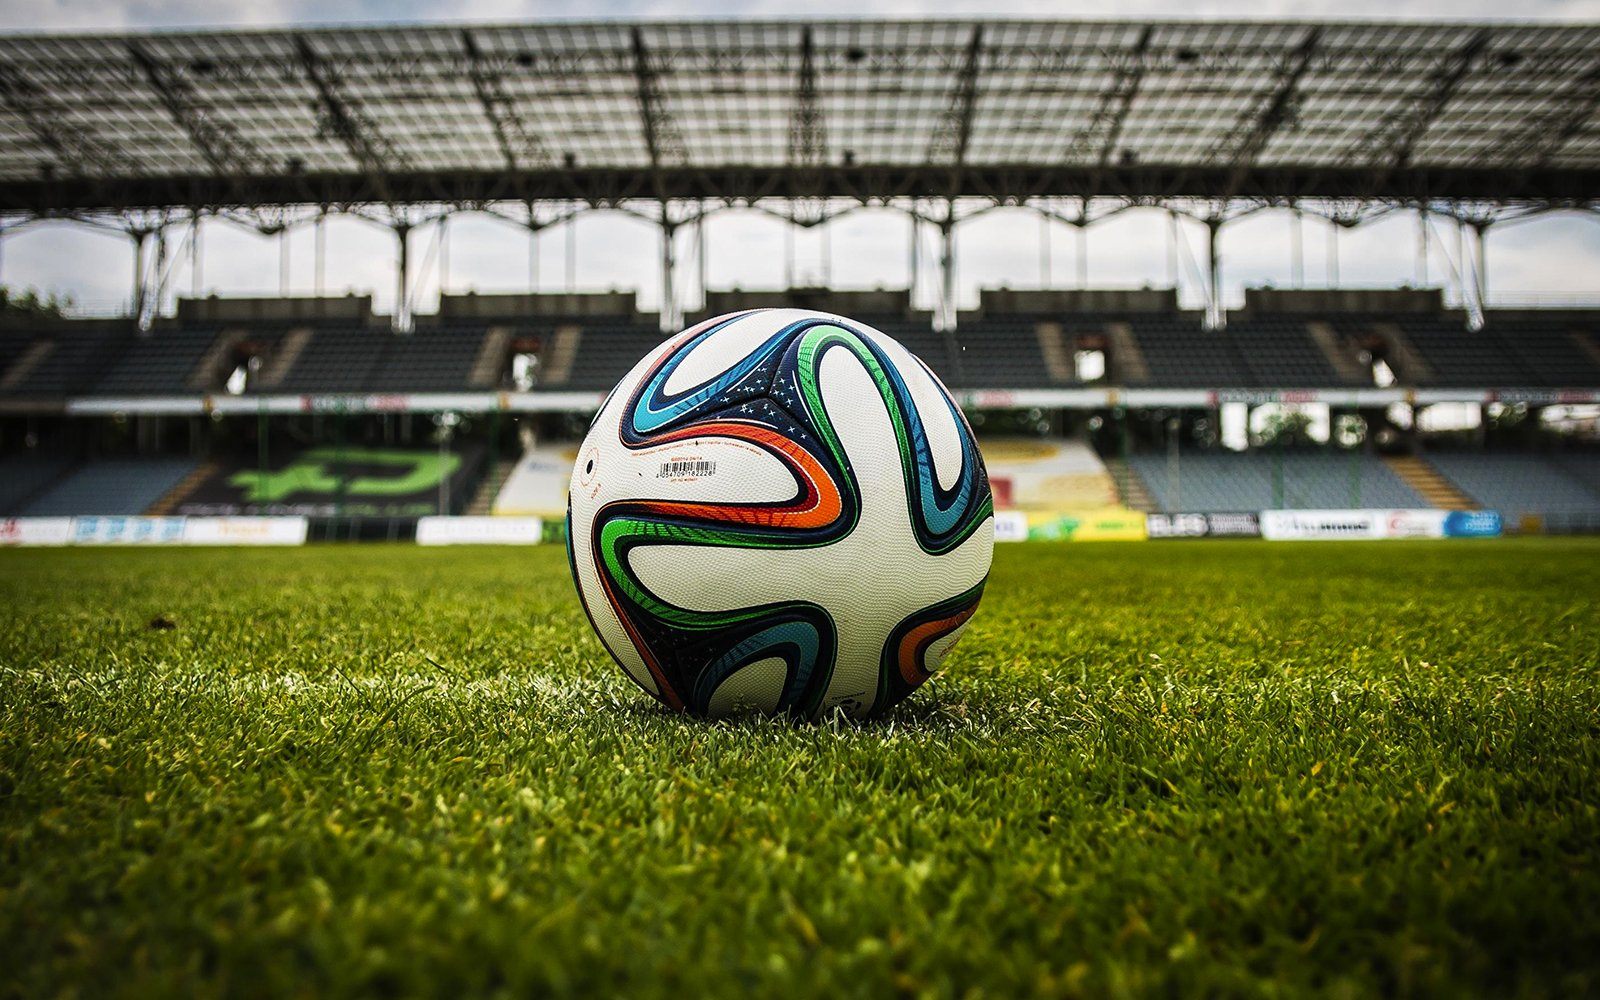 The Best Soccer Balls of 2019